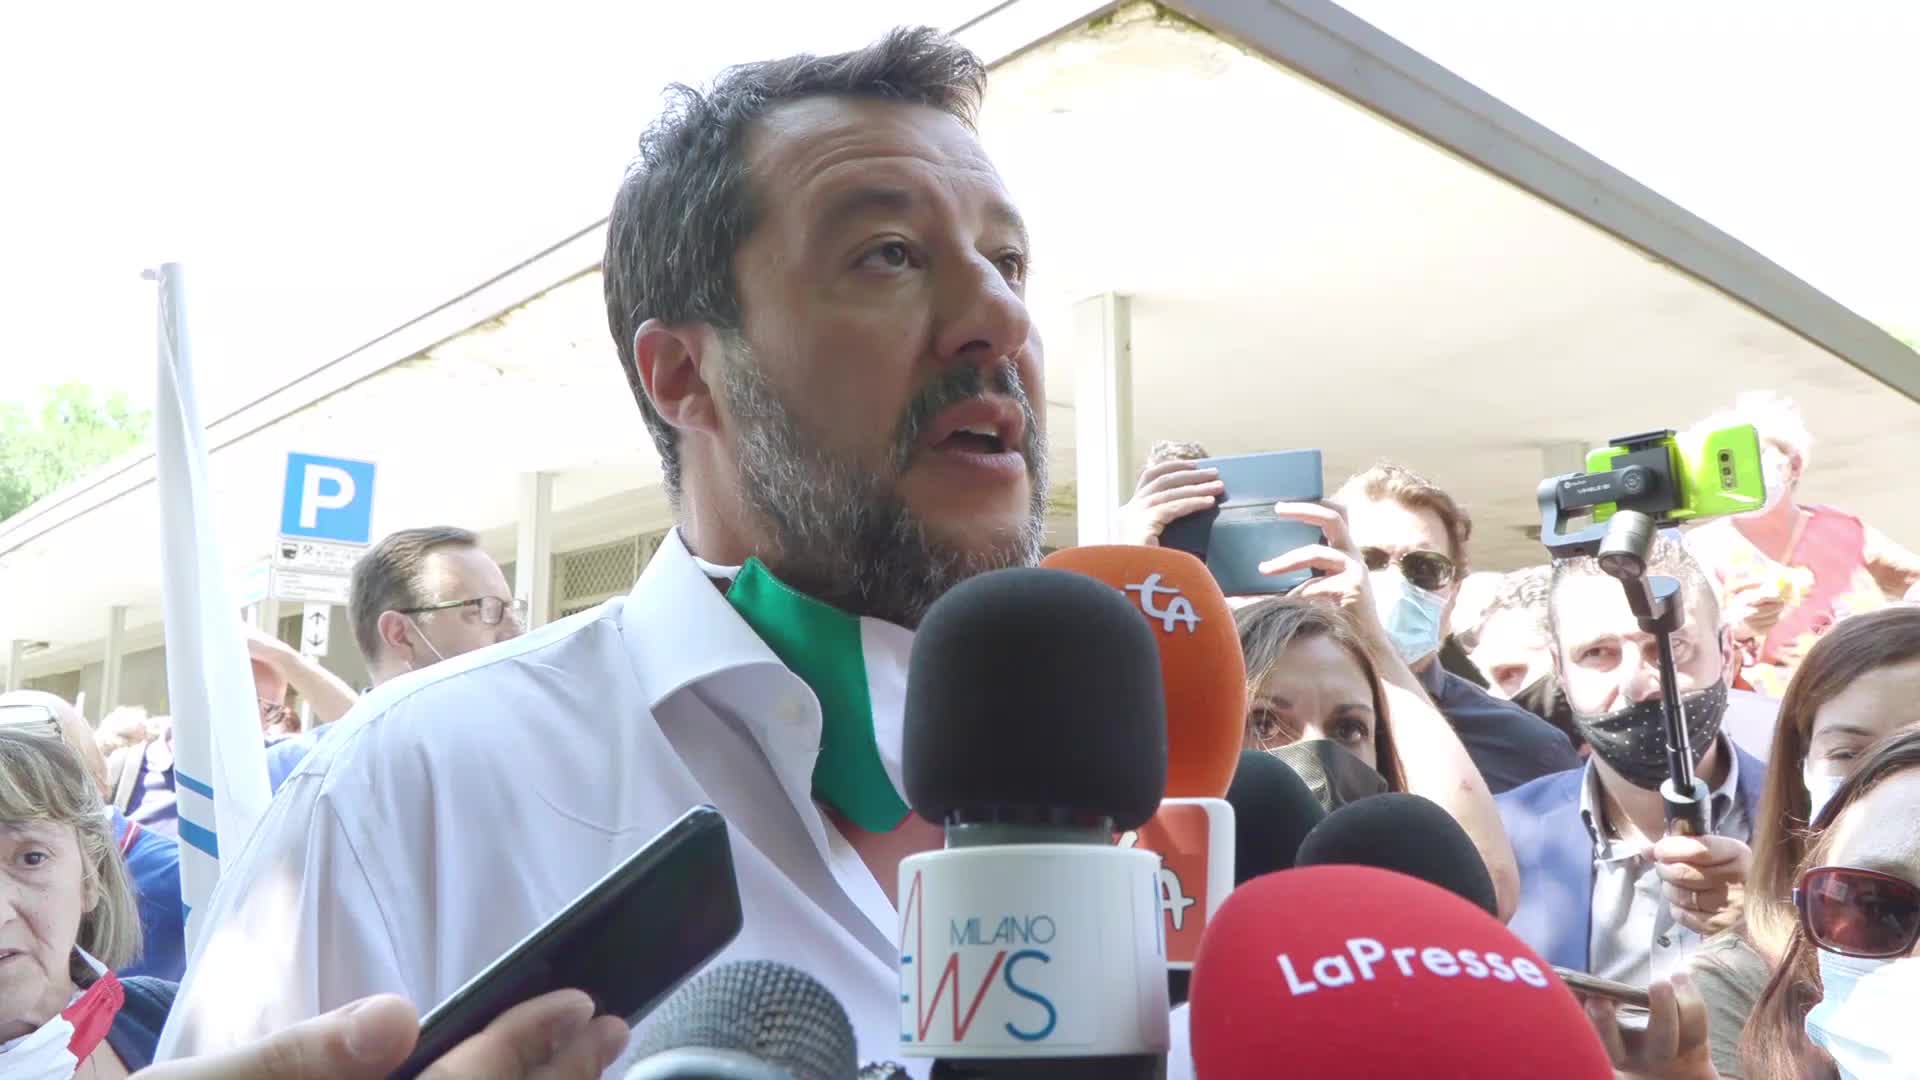 Salvini aggredito in Toscana: ragazza gli strappa camicia e rosario